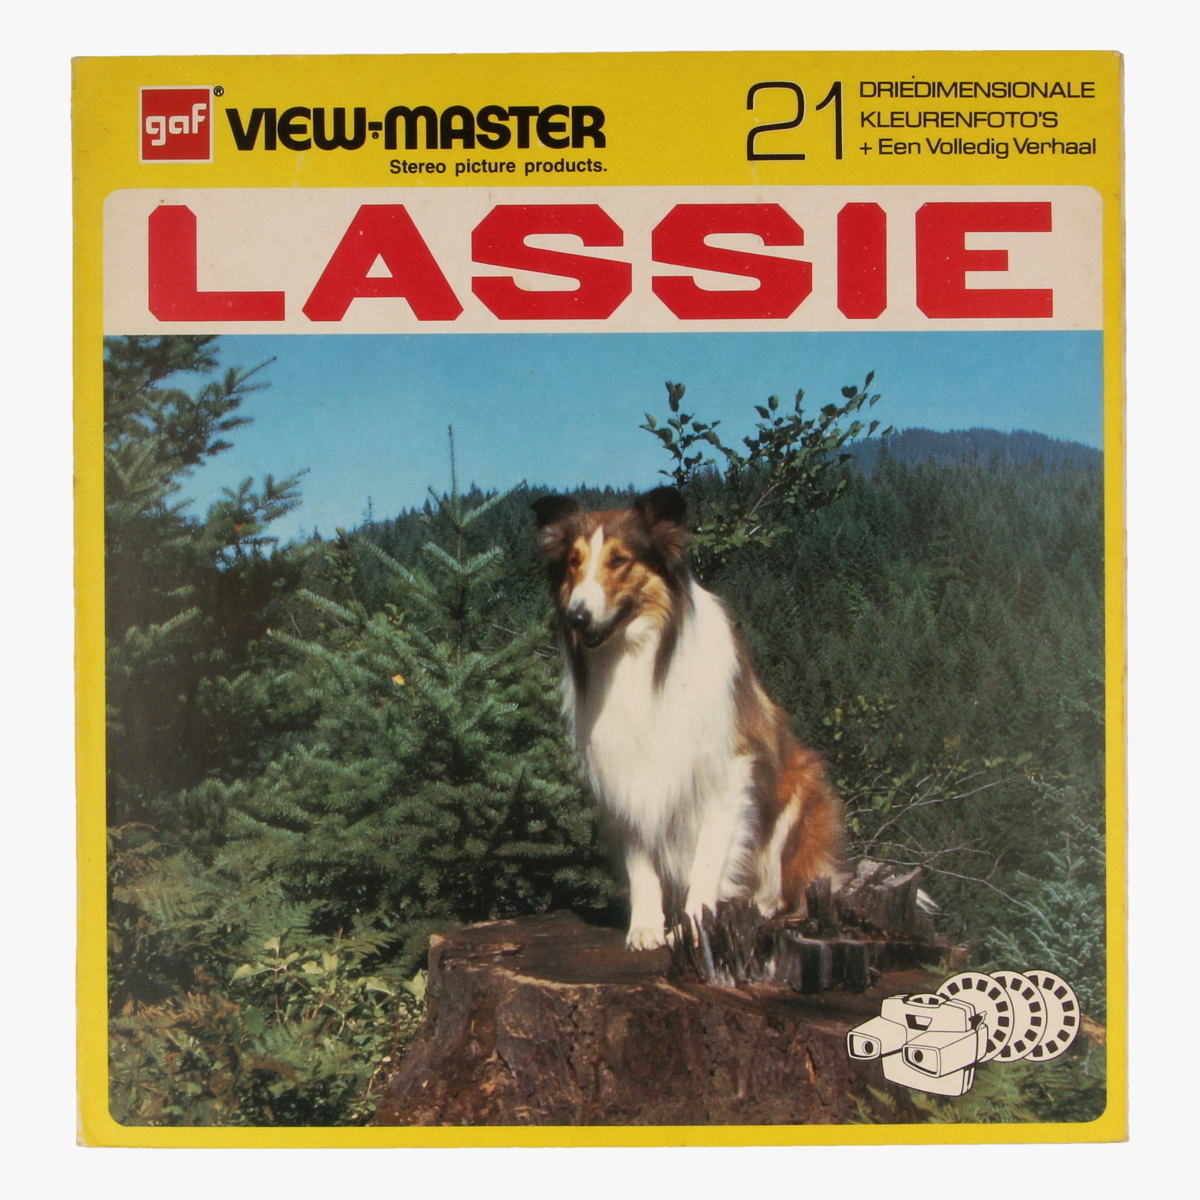 Afbeeldingen van View-master Lassi  bij de houthakkers B4891,B4892,B4893